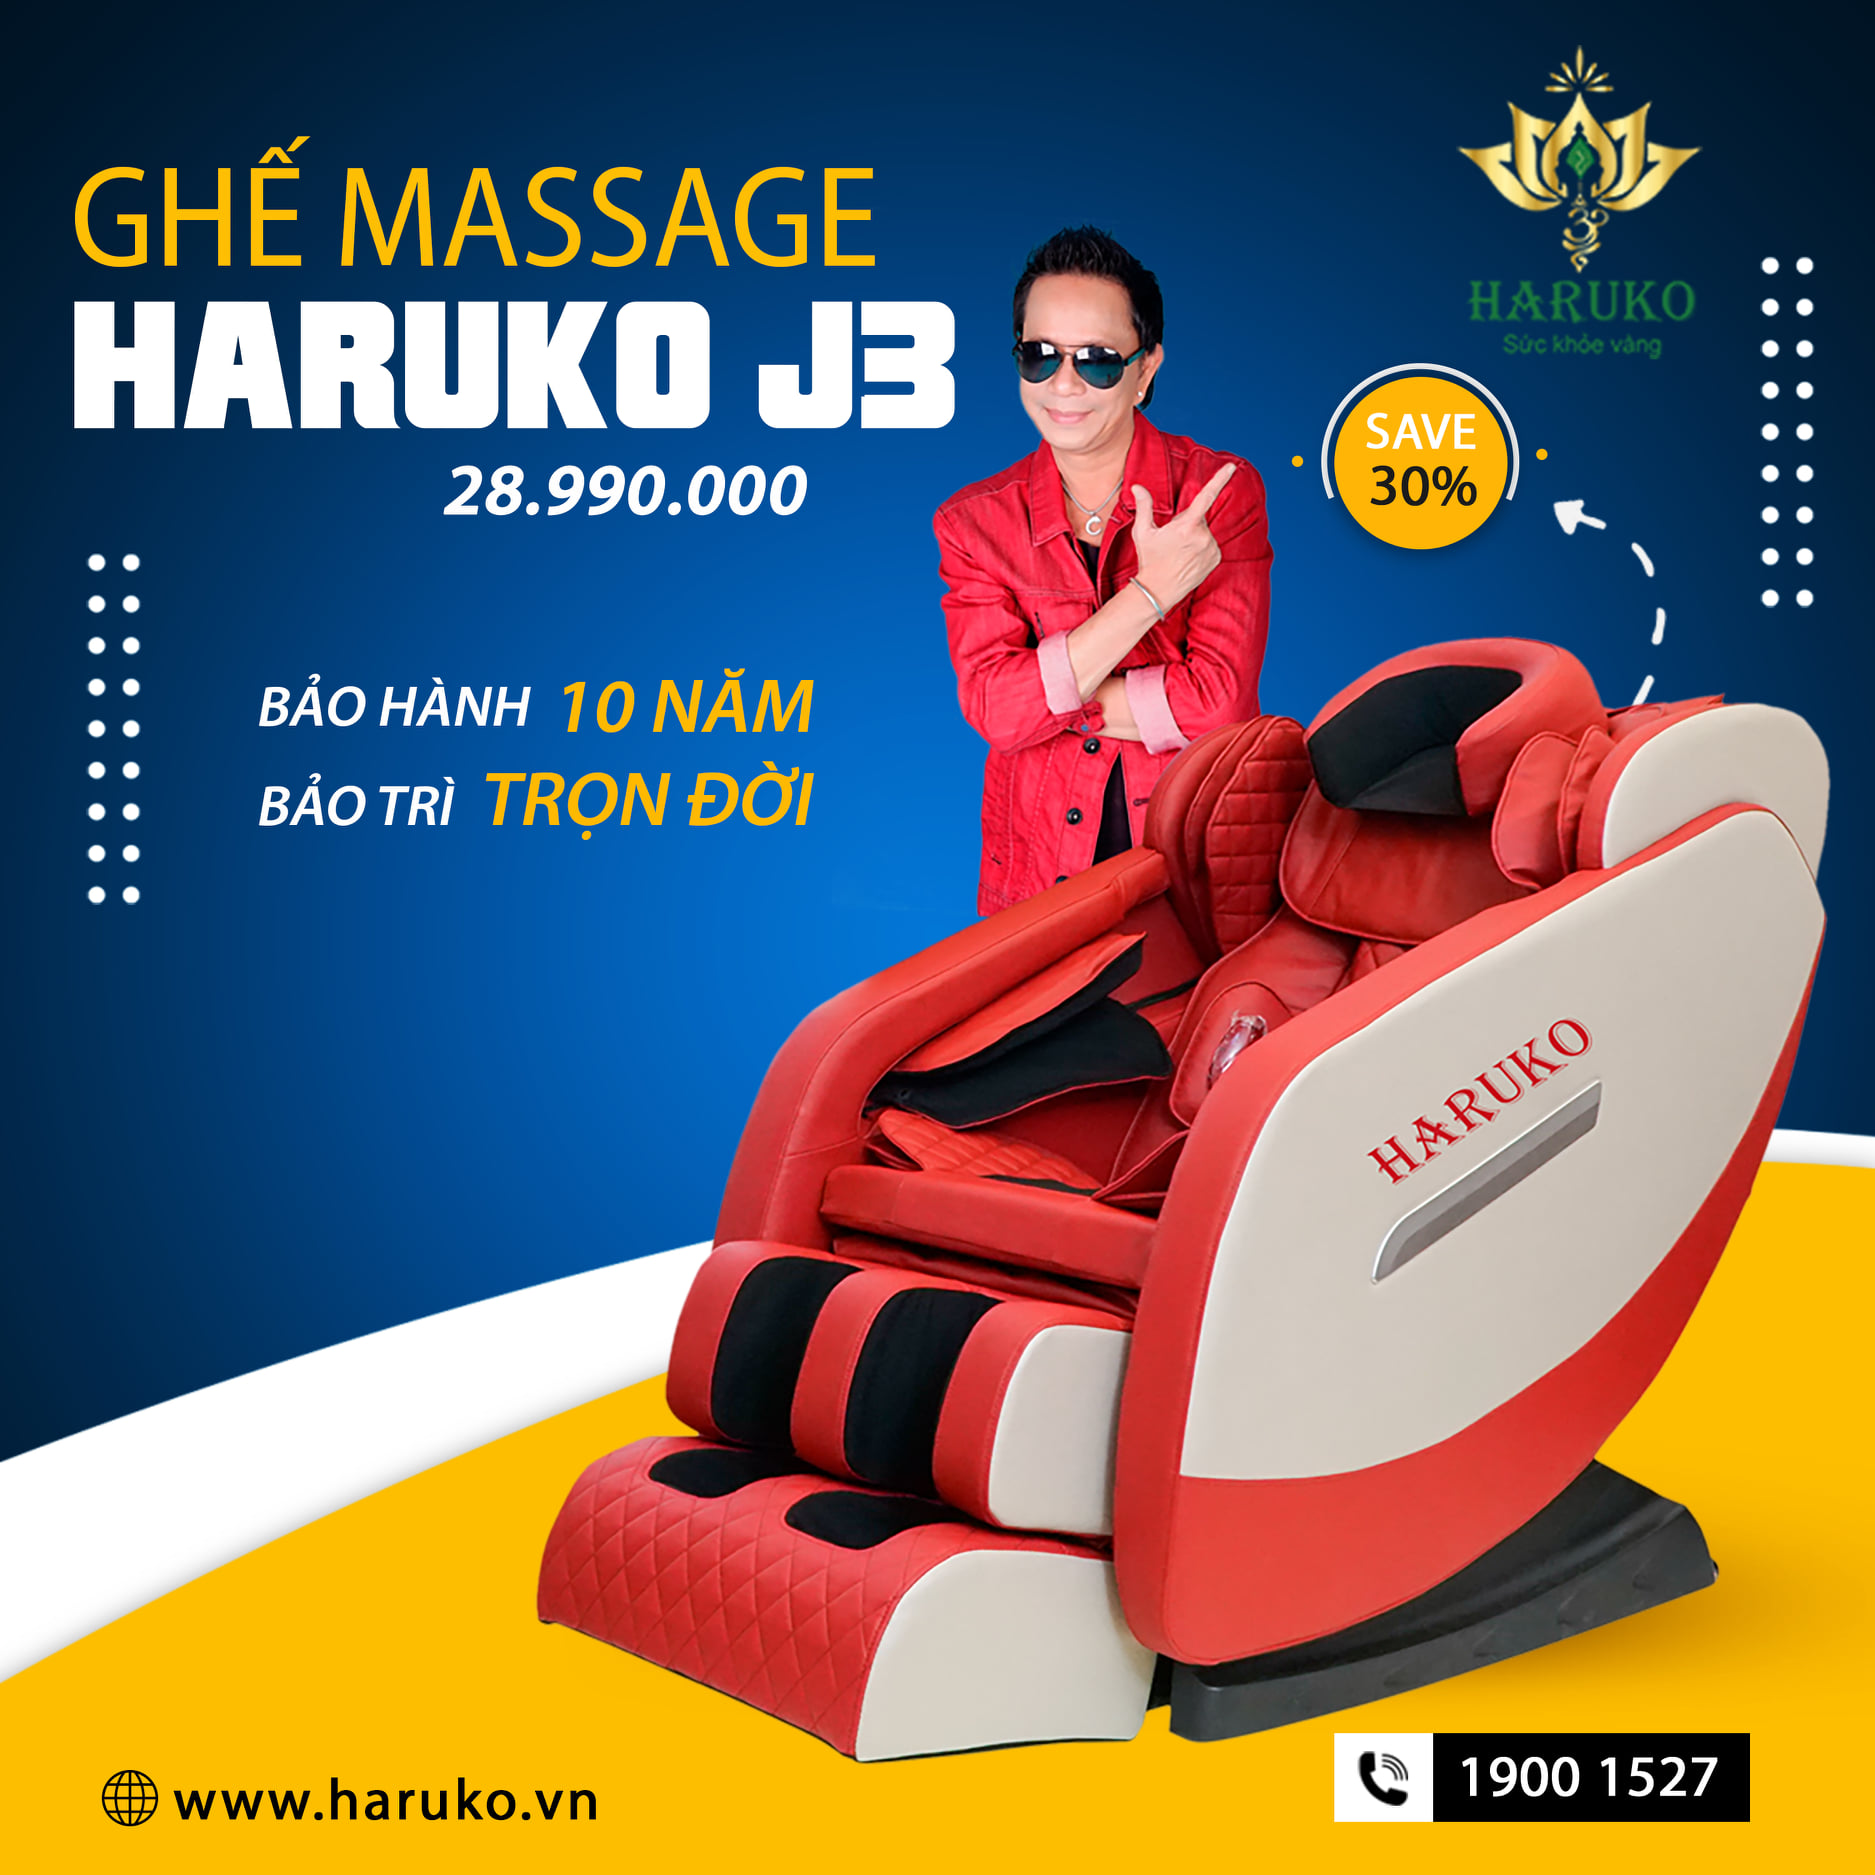 Ghế massage dưới 30 triệu sở hữu chất lượng cao là lựa chọn ưa thích của nhiều khách hàng